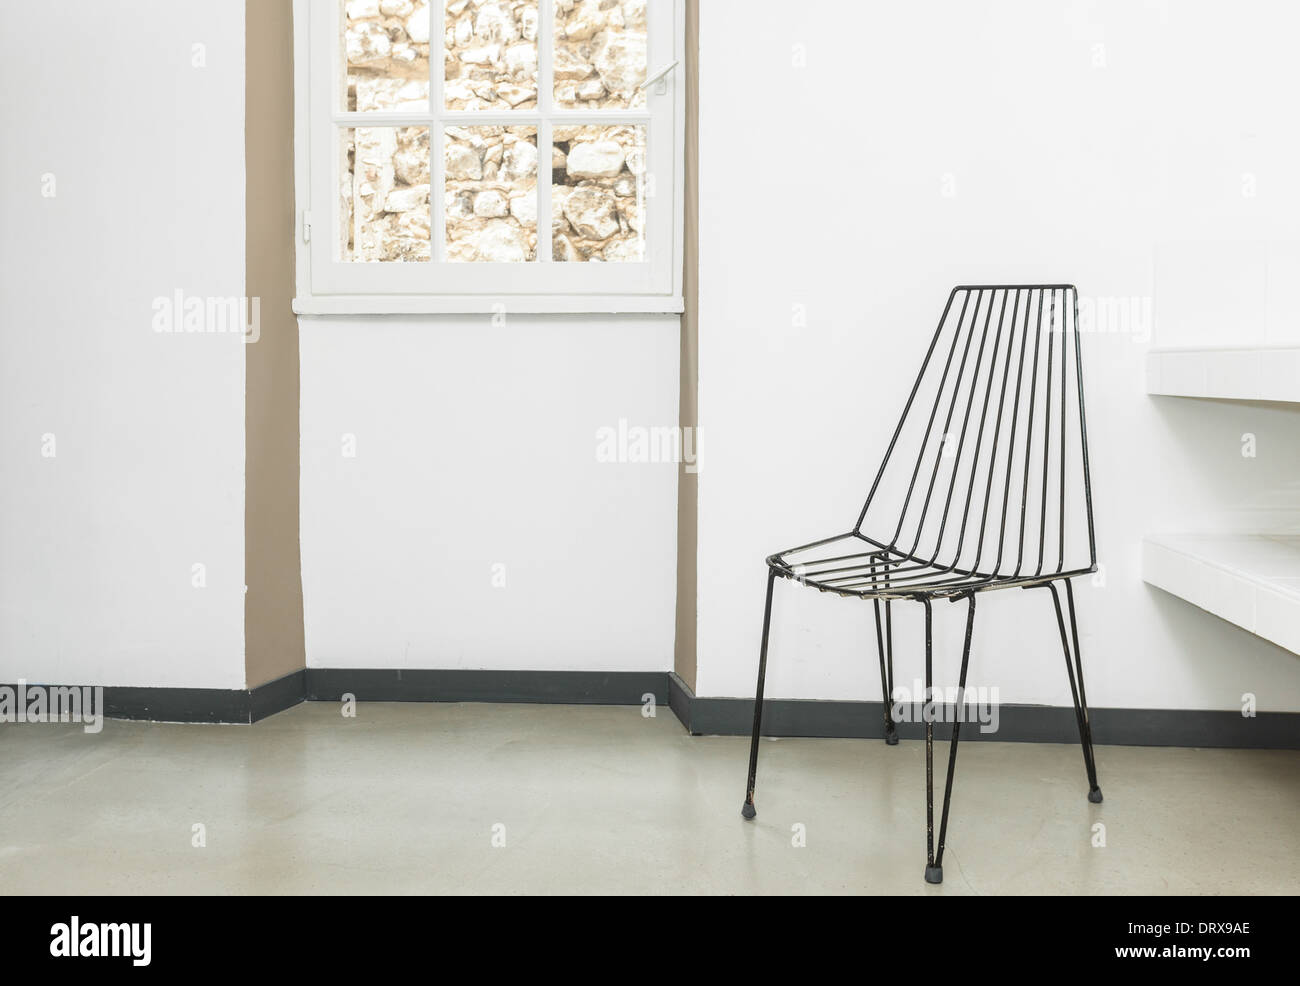 Sedia in fili nella stanza vuota con le pareti bianche. Foto Stock